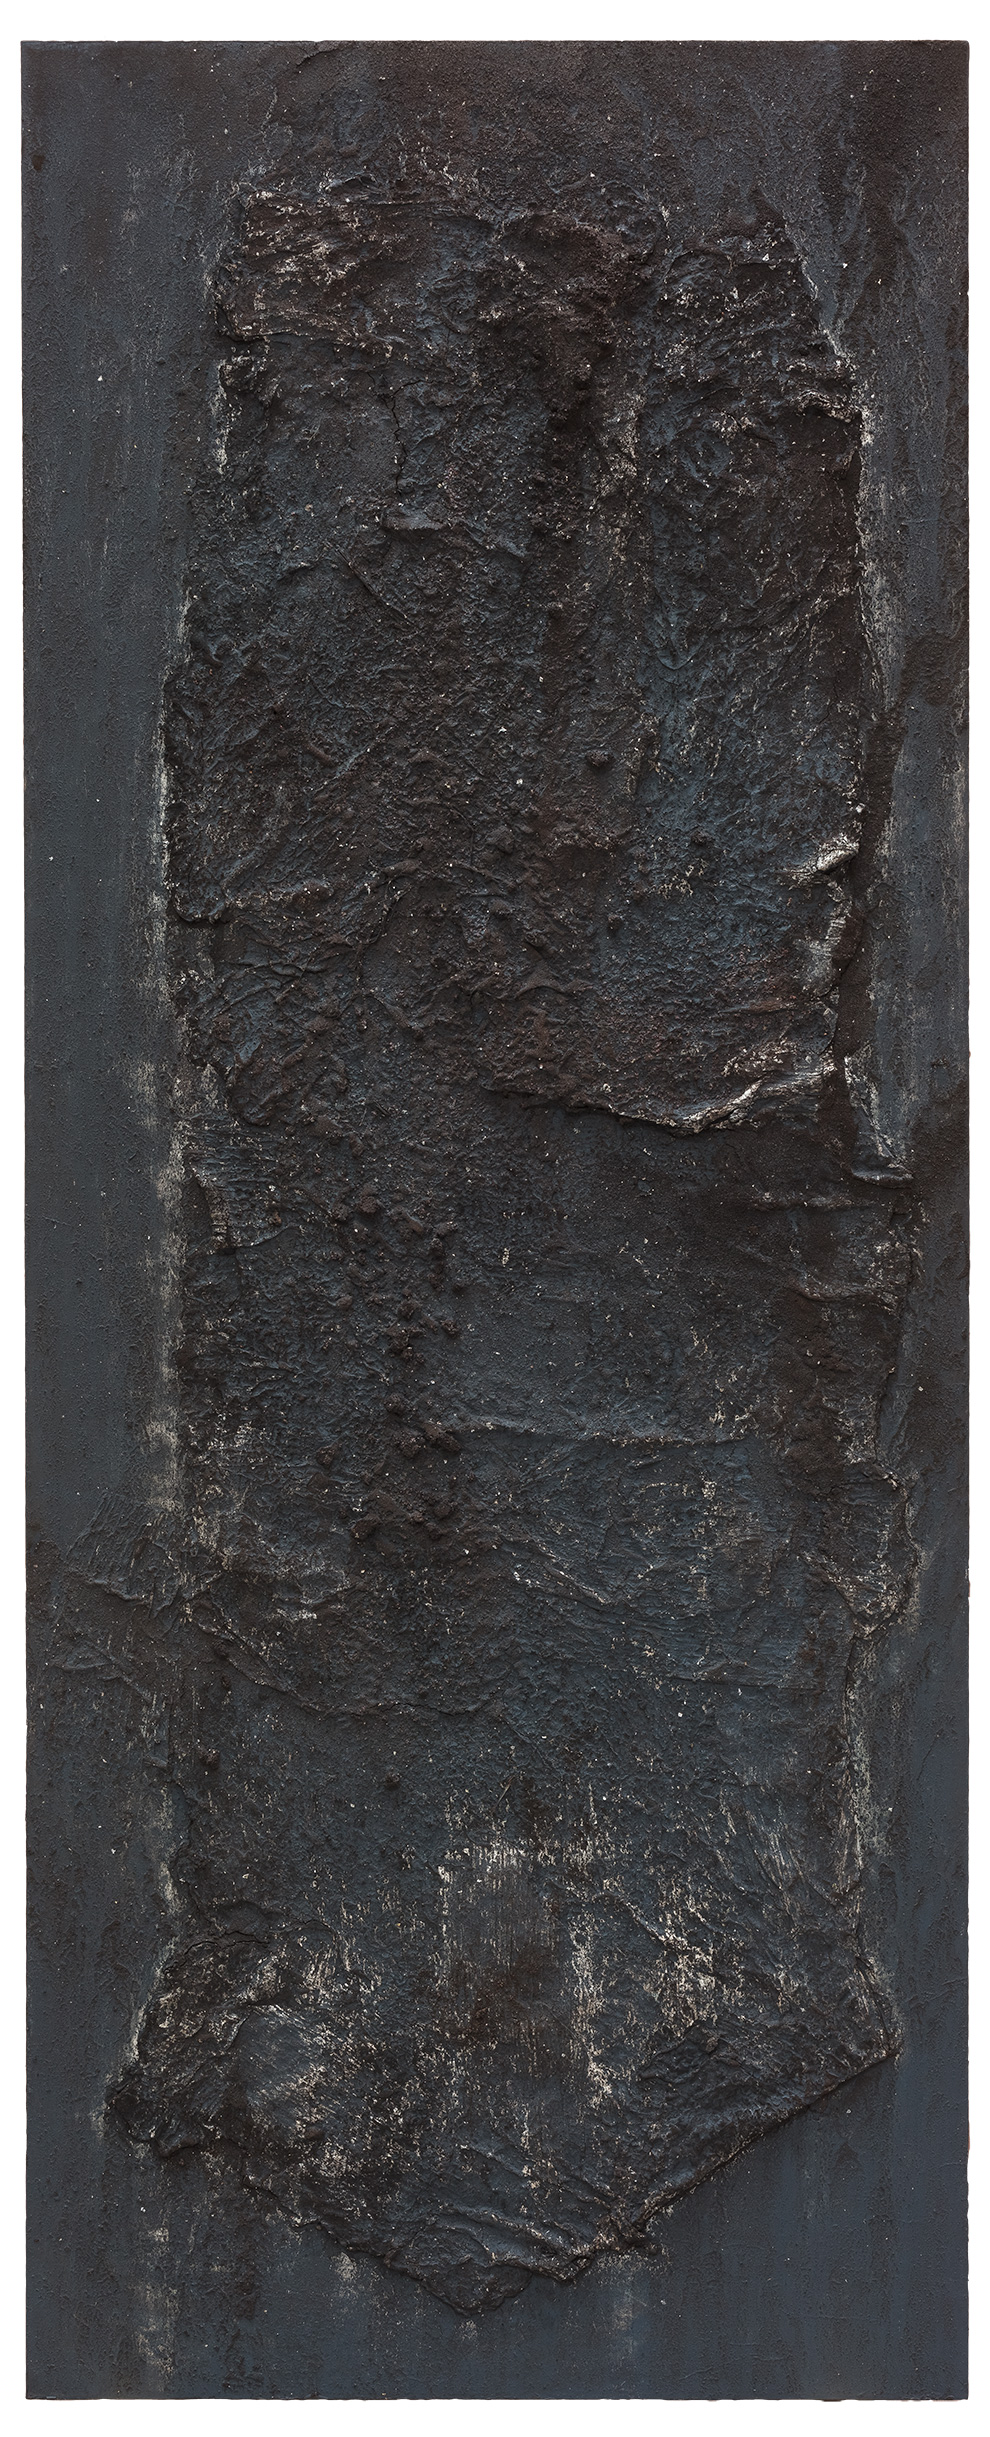 《书卷》三十二--200x90cm--木质构造、宣纸、矿物·植物·土质颜料-、金银粉、金属渣--2018年.jpg